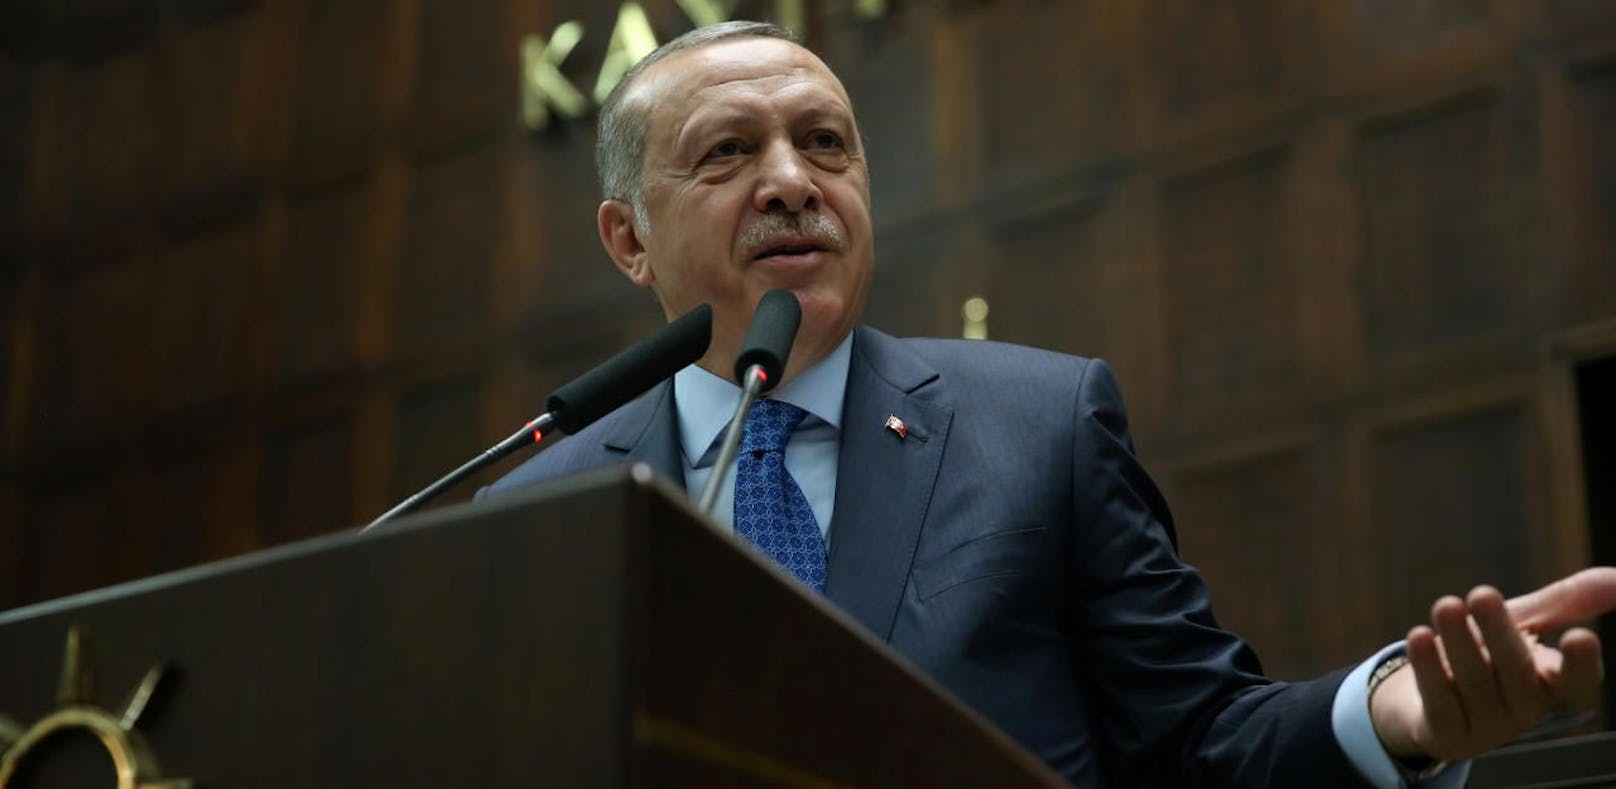 Recep Tayyip Erdogan bei der Rede vor seiner Partei AKP.